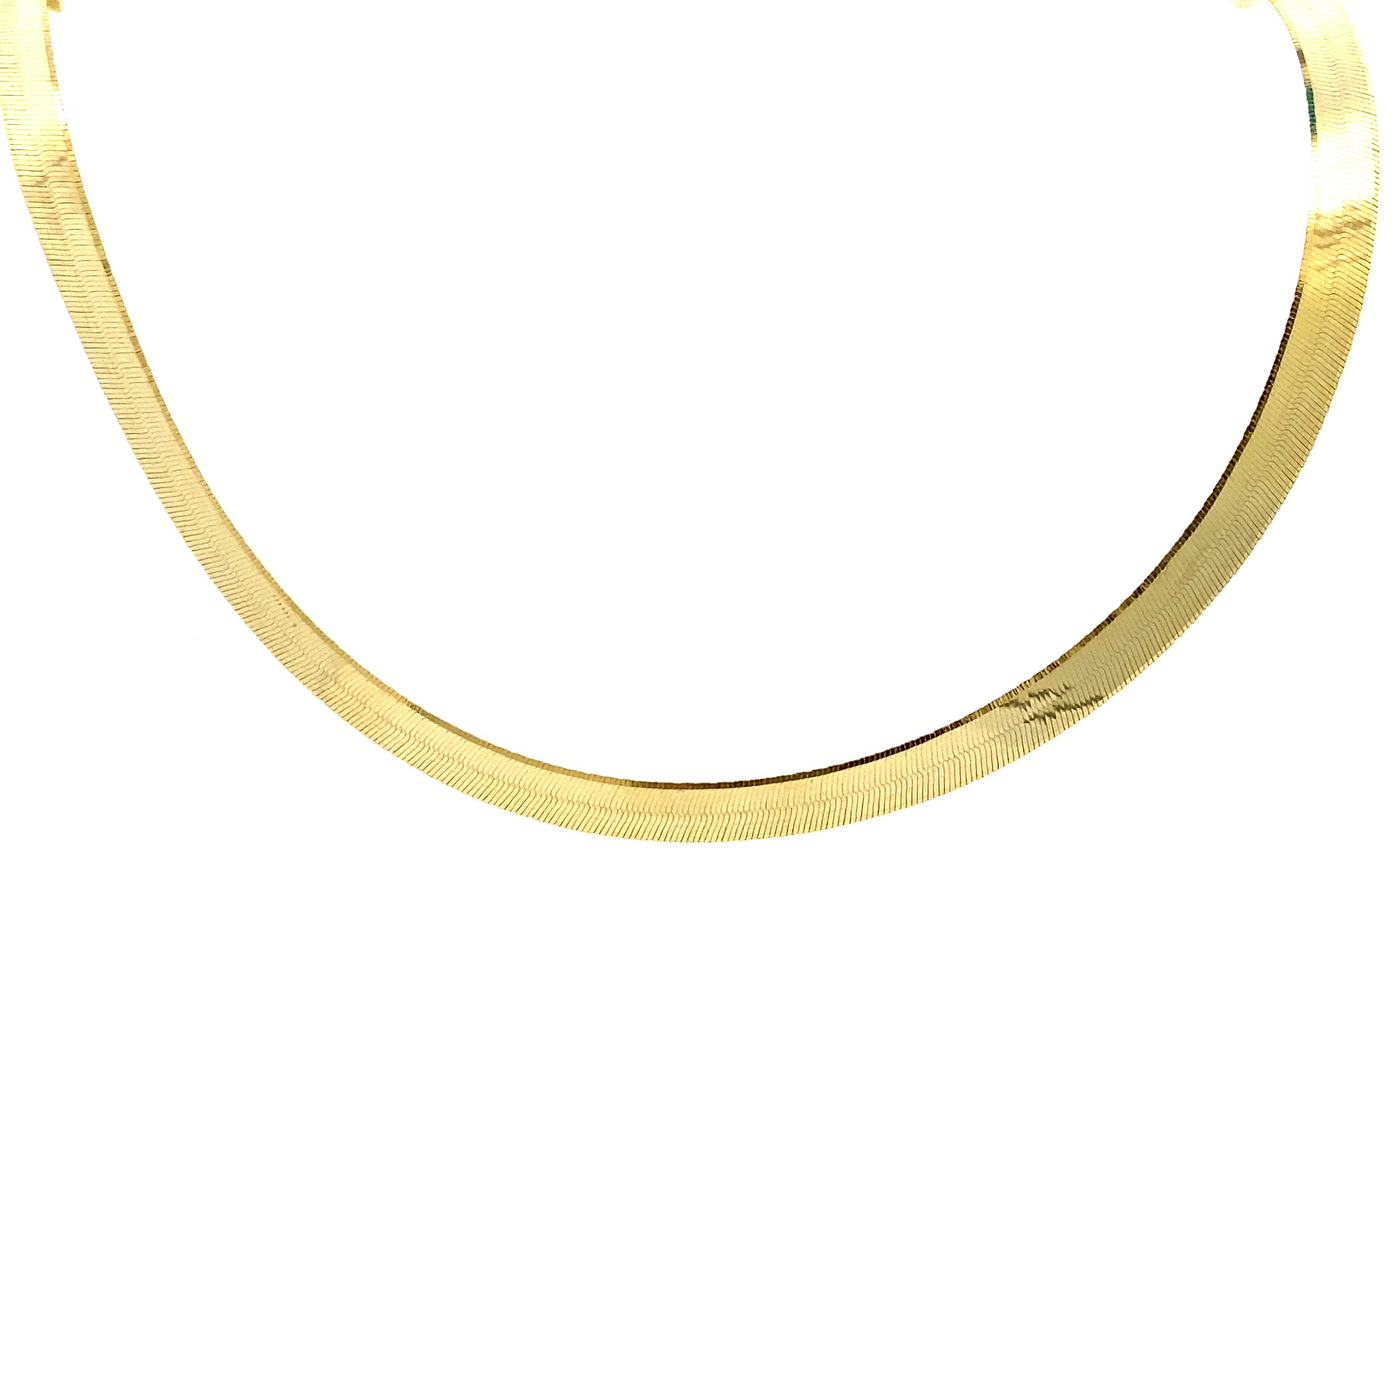 10 Karat Yellow Gold 5mm Herringbone Chain